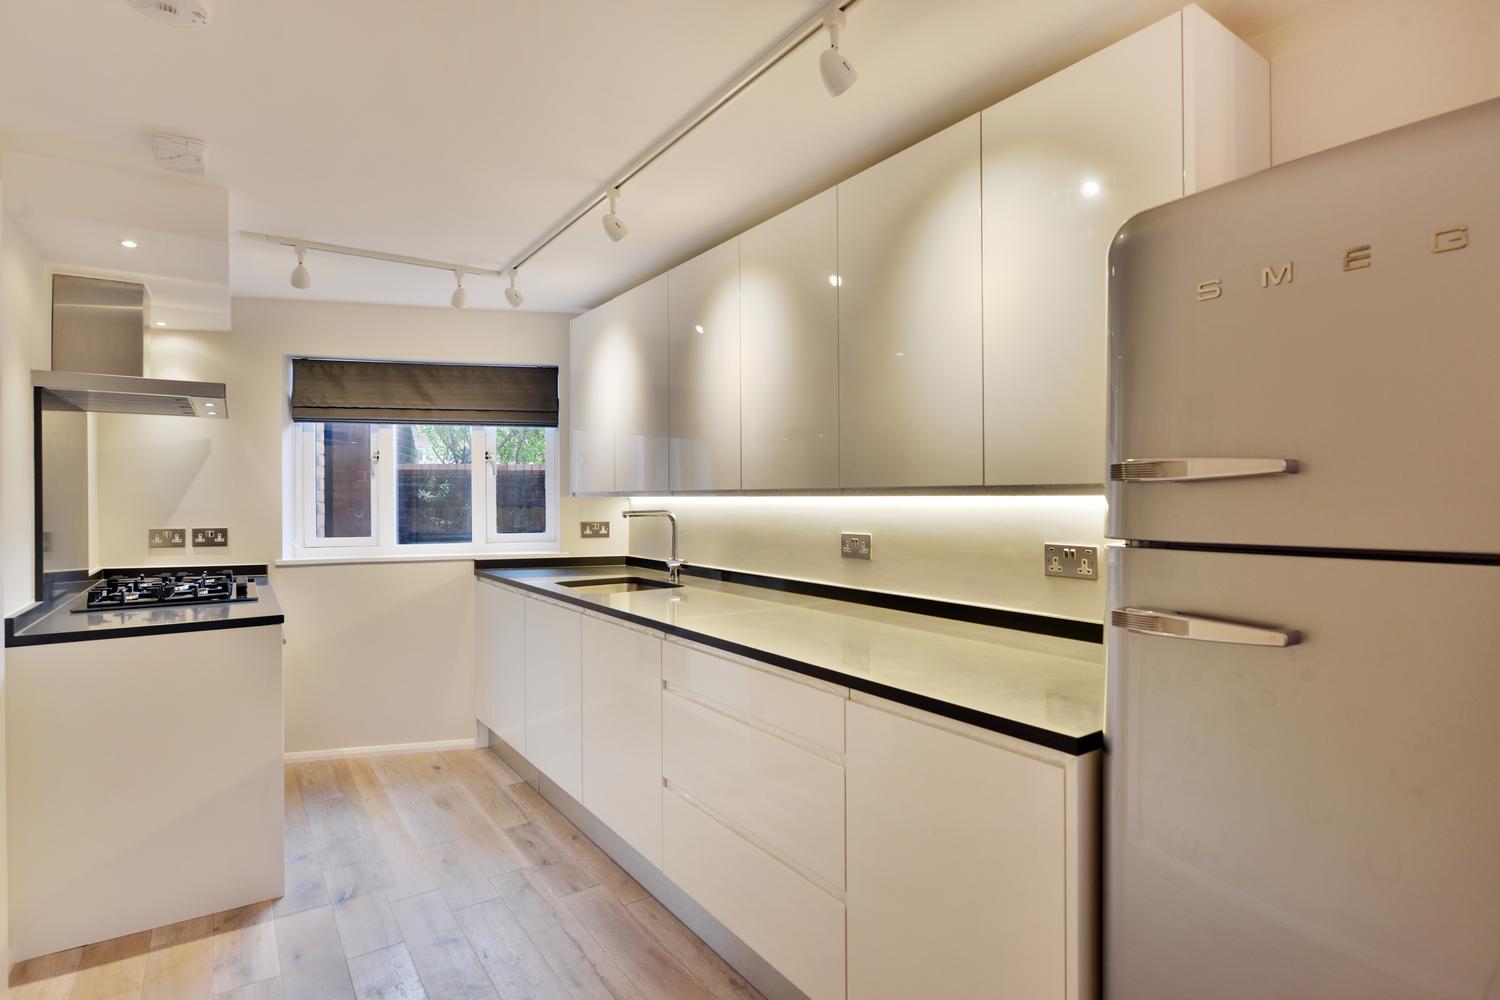 Kitchen cupboards stunning design